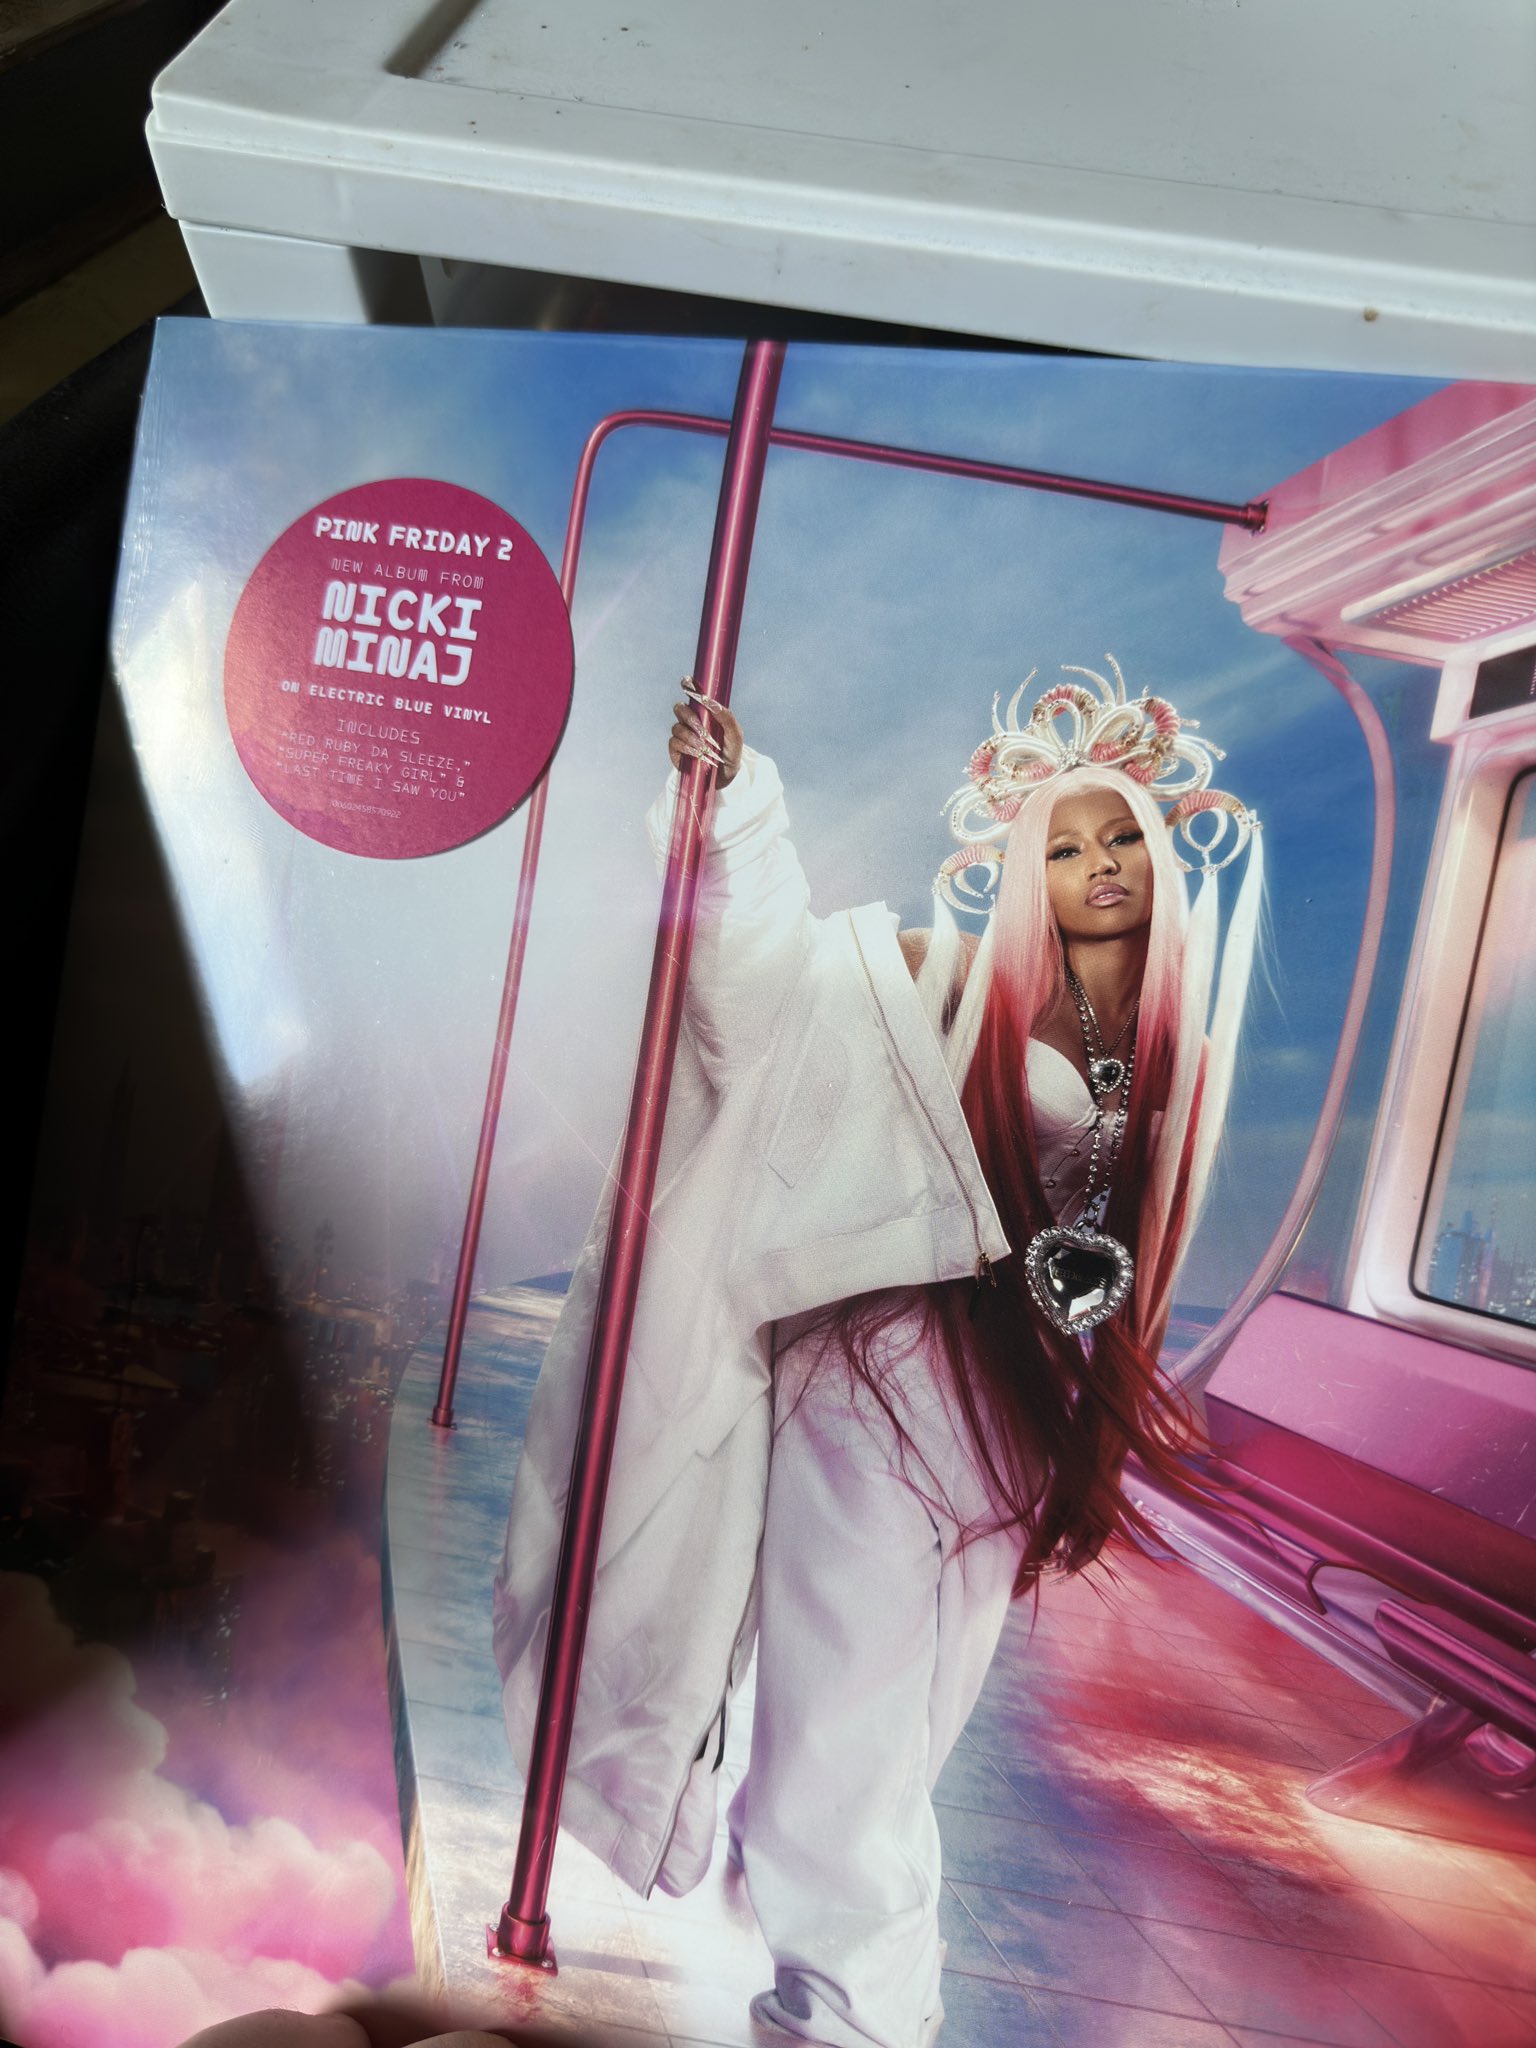 LoloV88 on X: Enfin à moi l'édition vinyle pink 😍 #Angèle